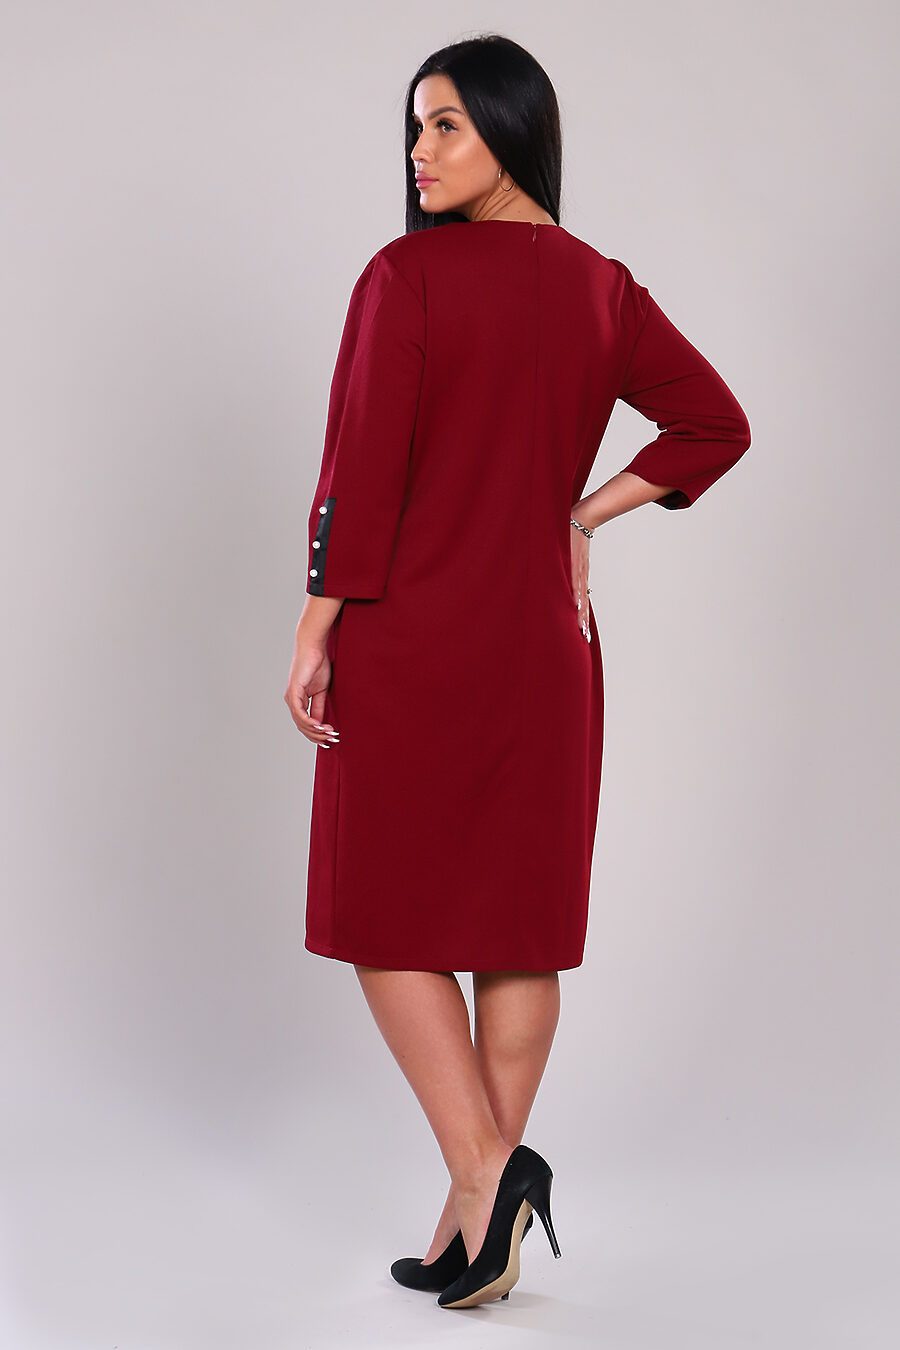 Платье 31598 для женщин НАТАЛИ 741767 купить оптом от производителя. Совместная покупка женской одежды в OptMoyo